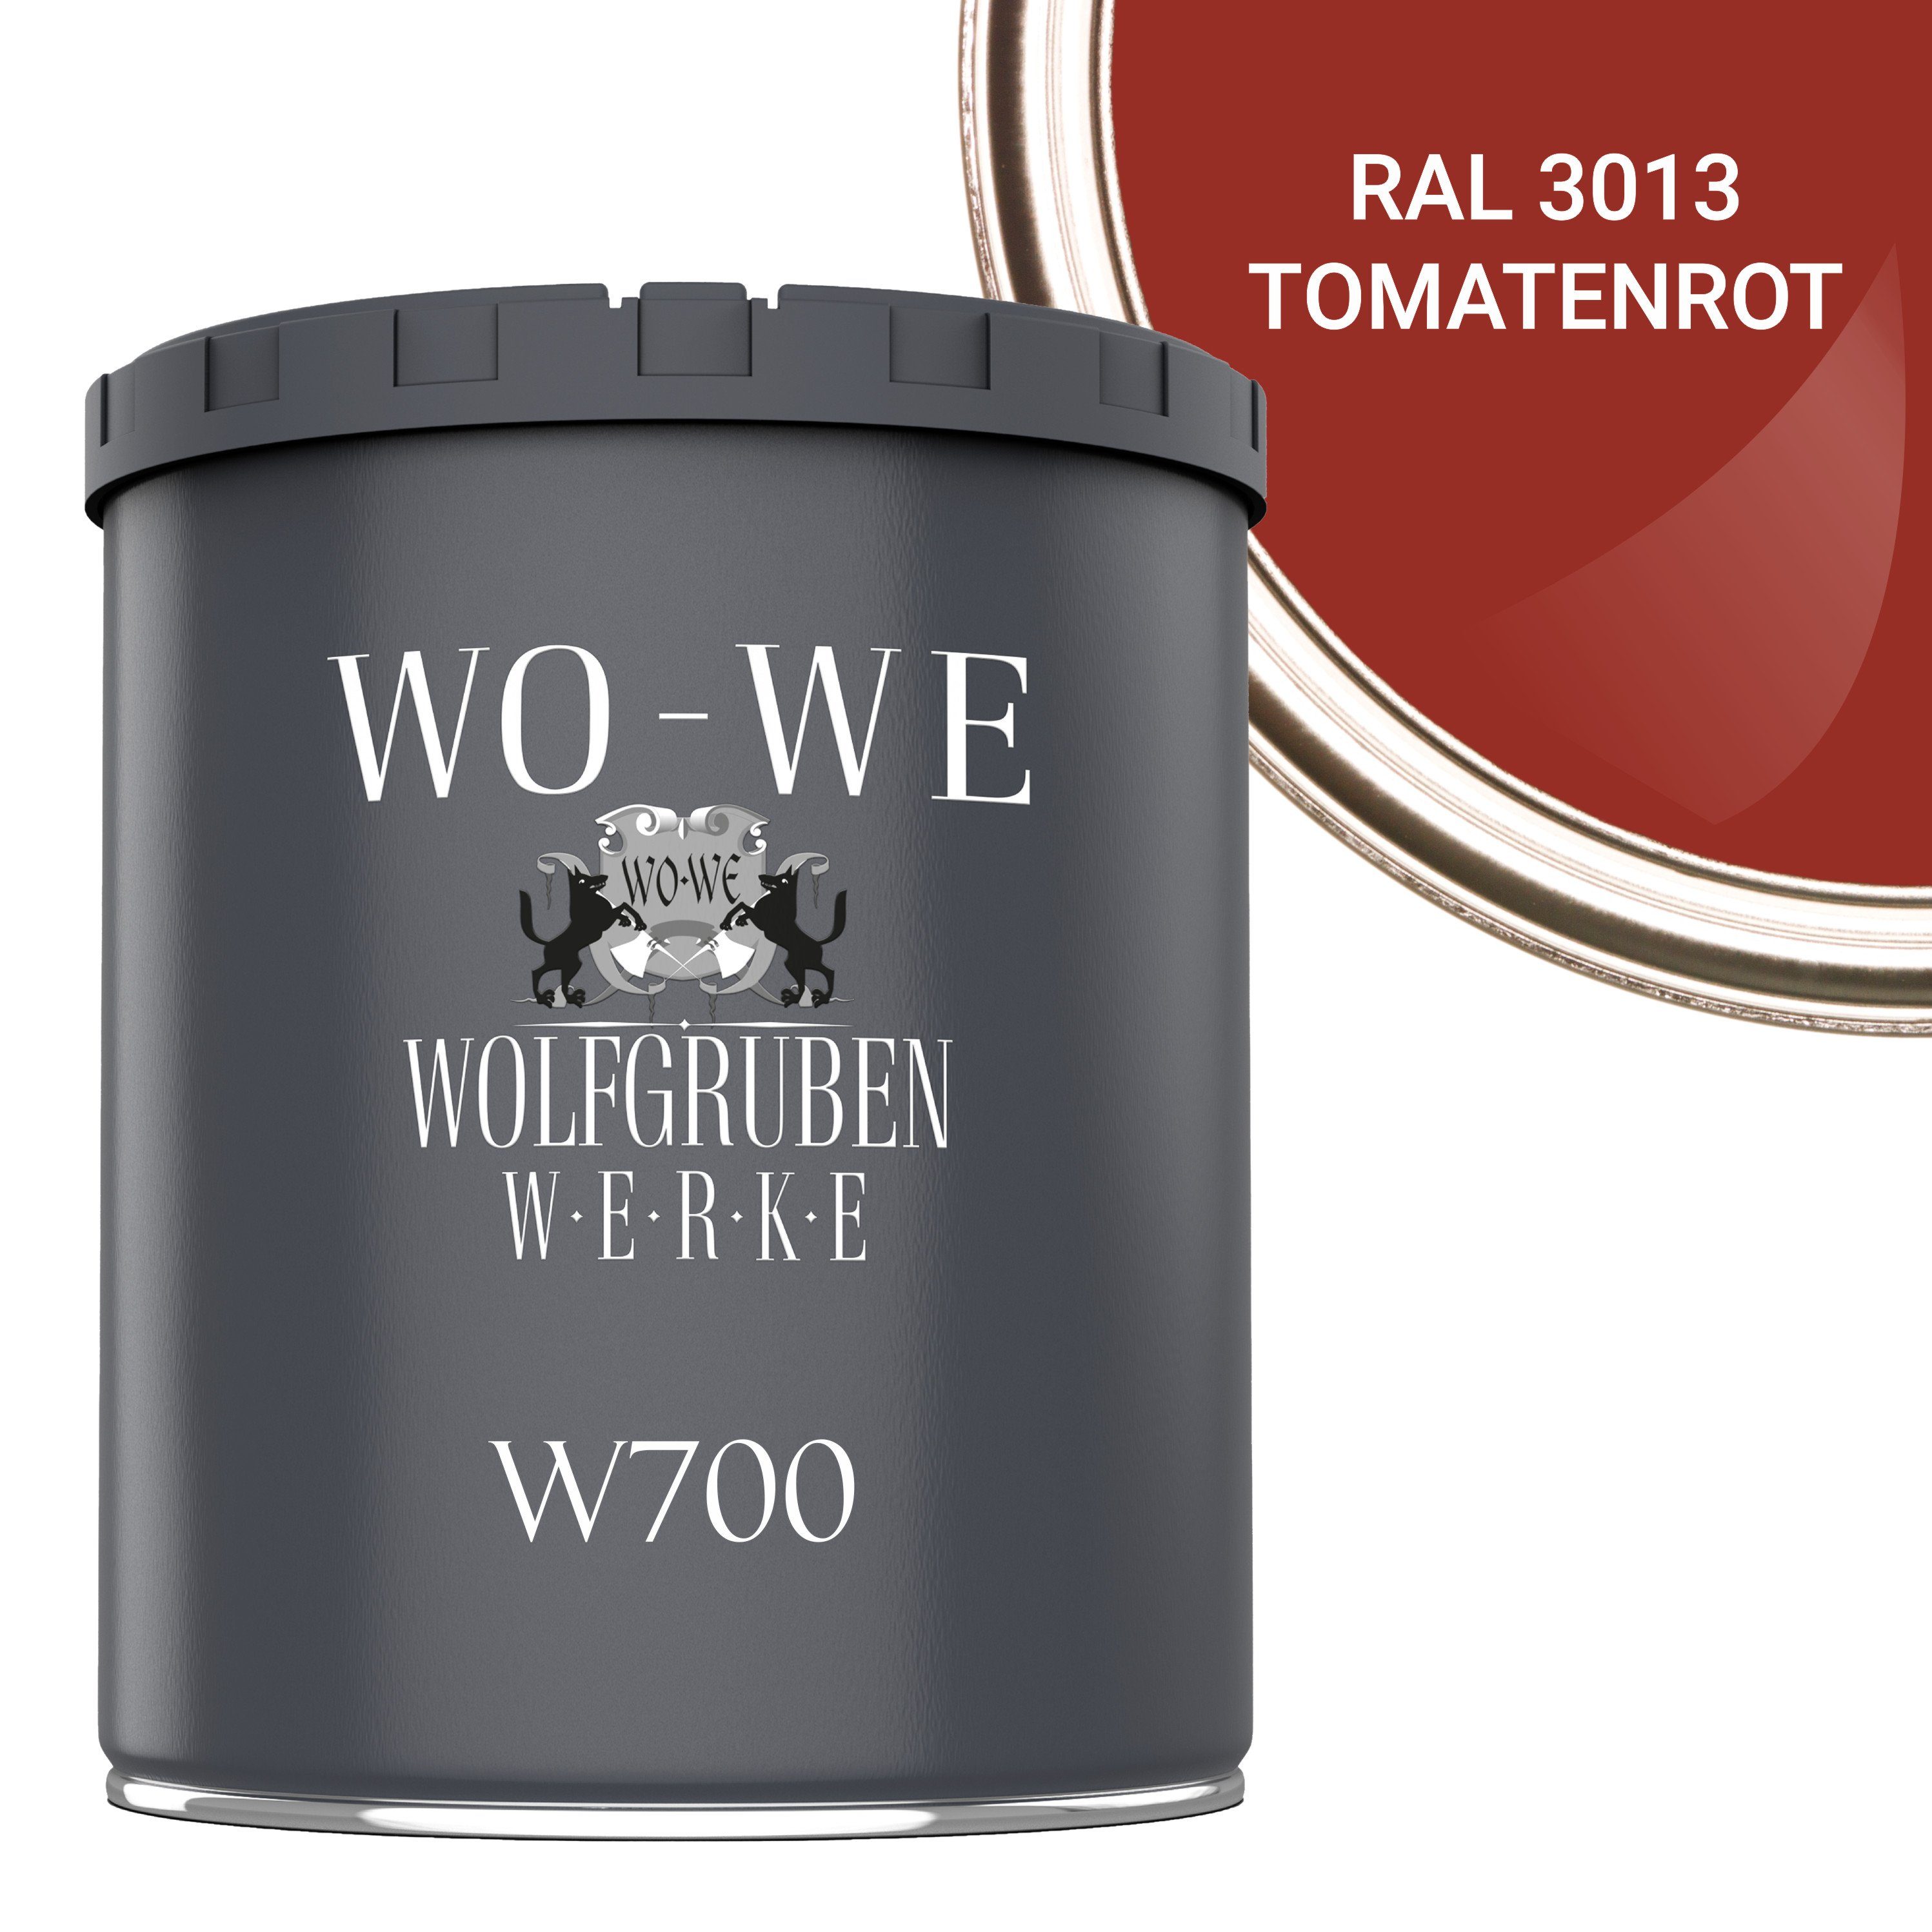 WO-WE Bodenversiegelung Tomatenrot Bodenbeschichtung 1-10L, W700, Seidenglänzend Bodenfarbe 3013 Betonfarbe RAL